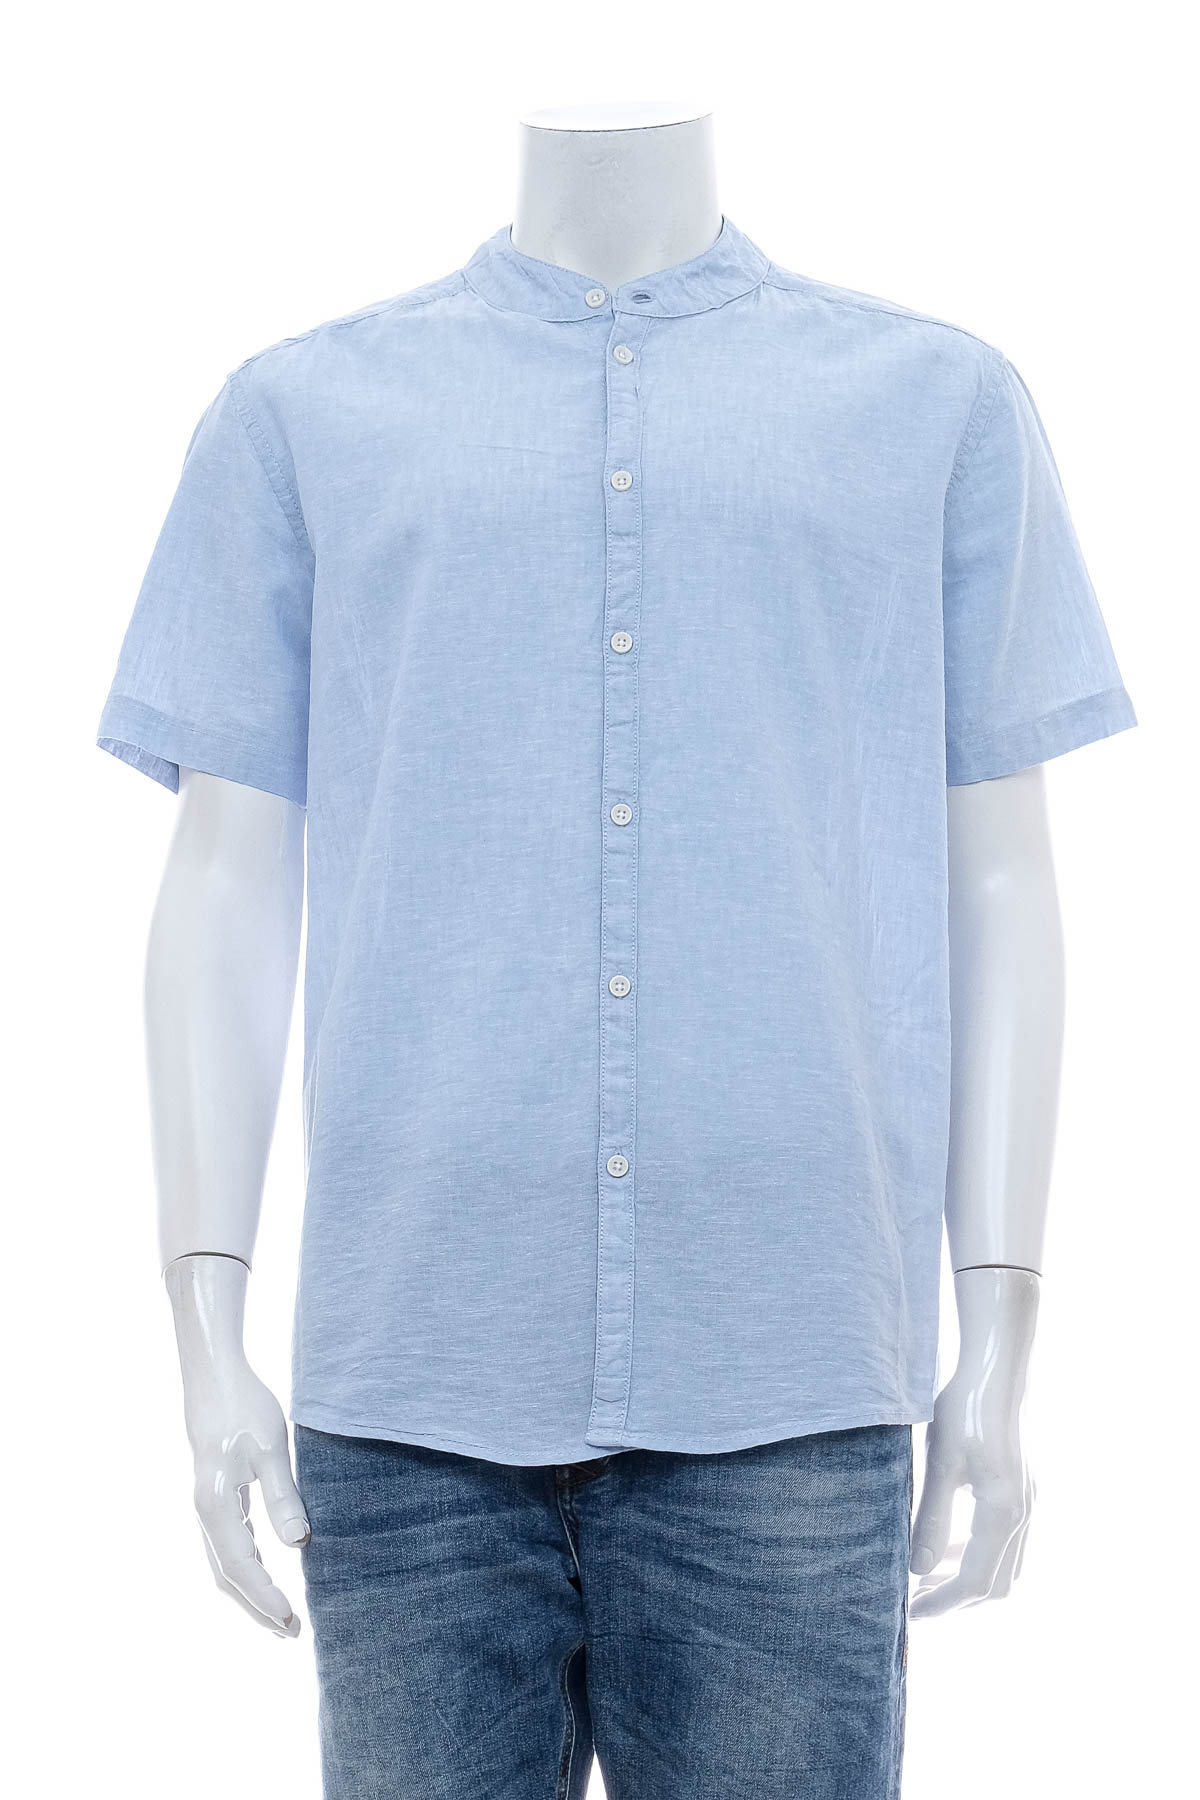 Ανδρικό πουκάμισο - Watson's - 0